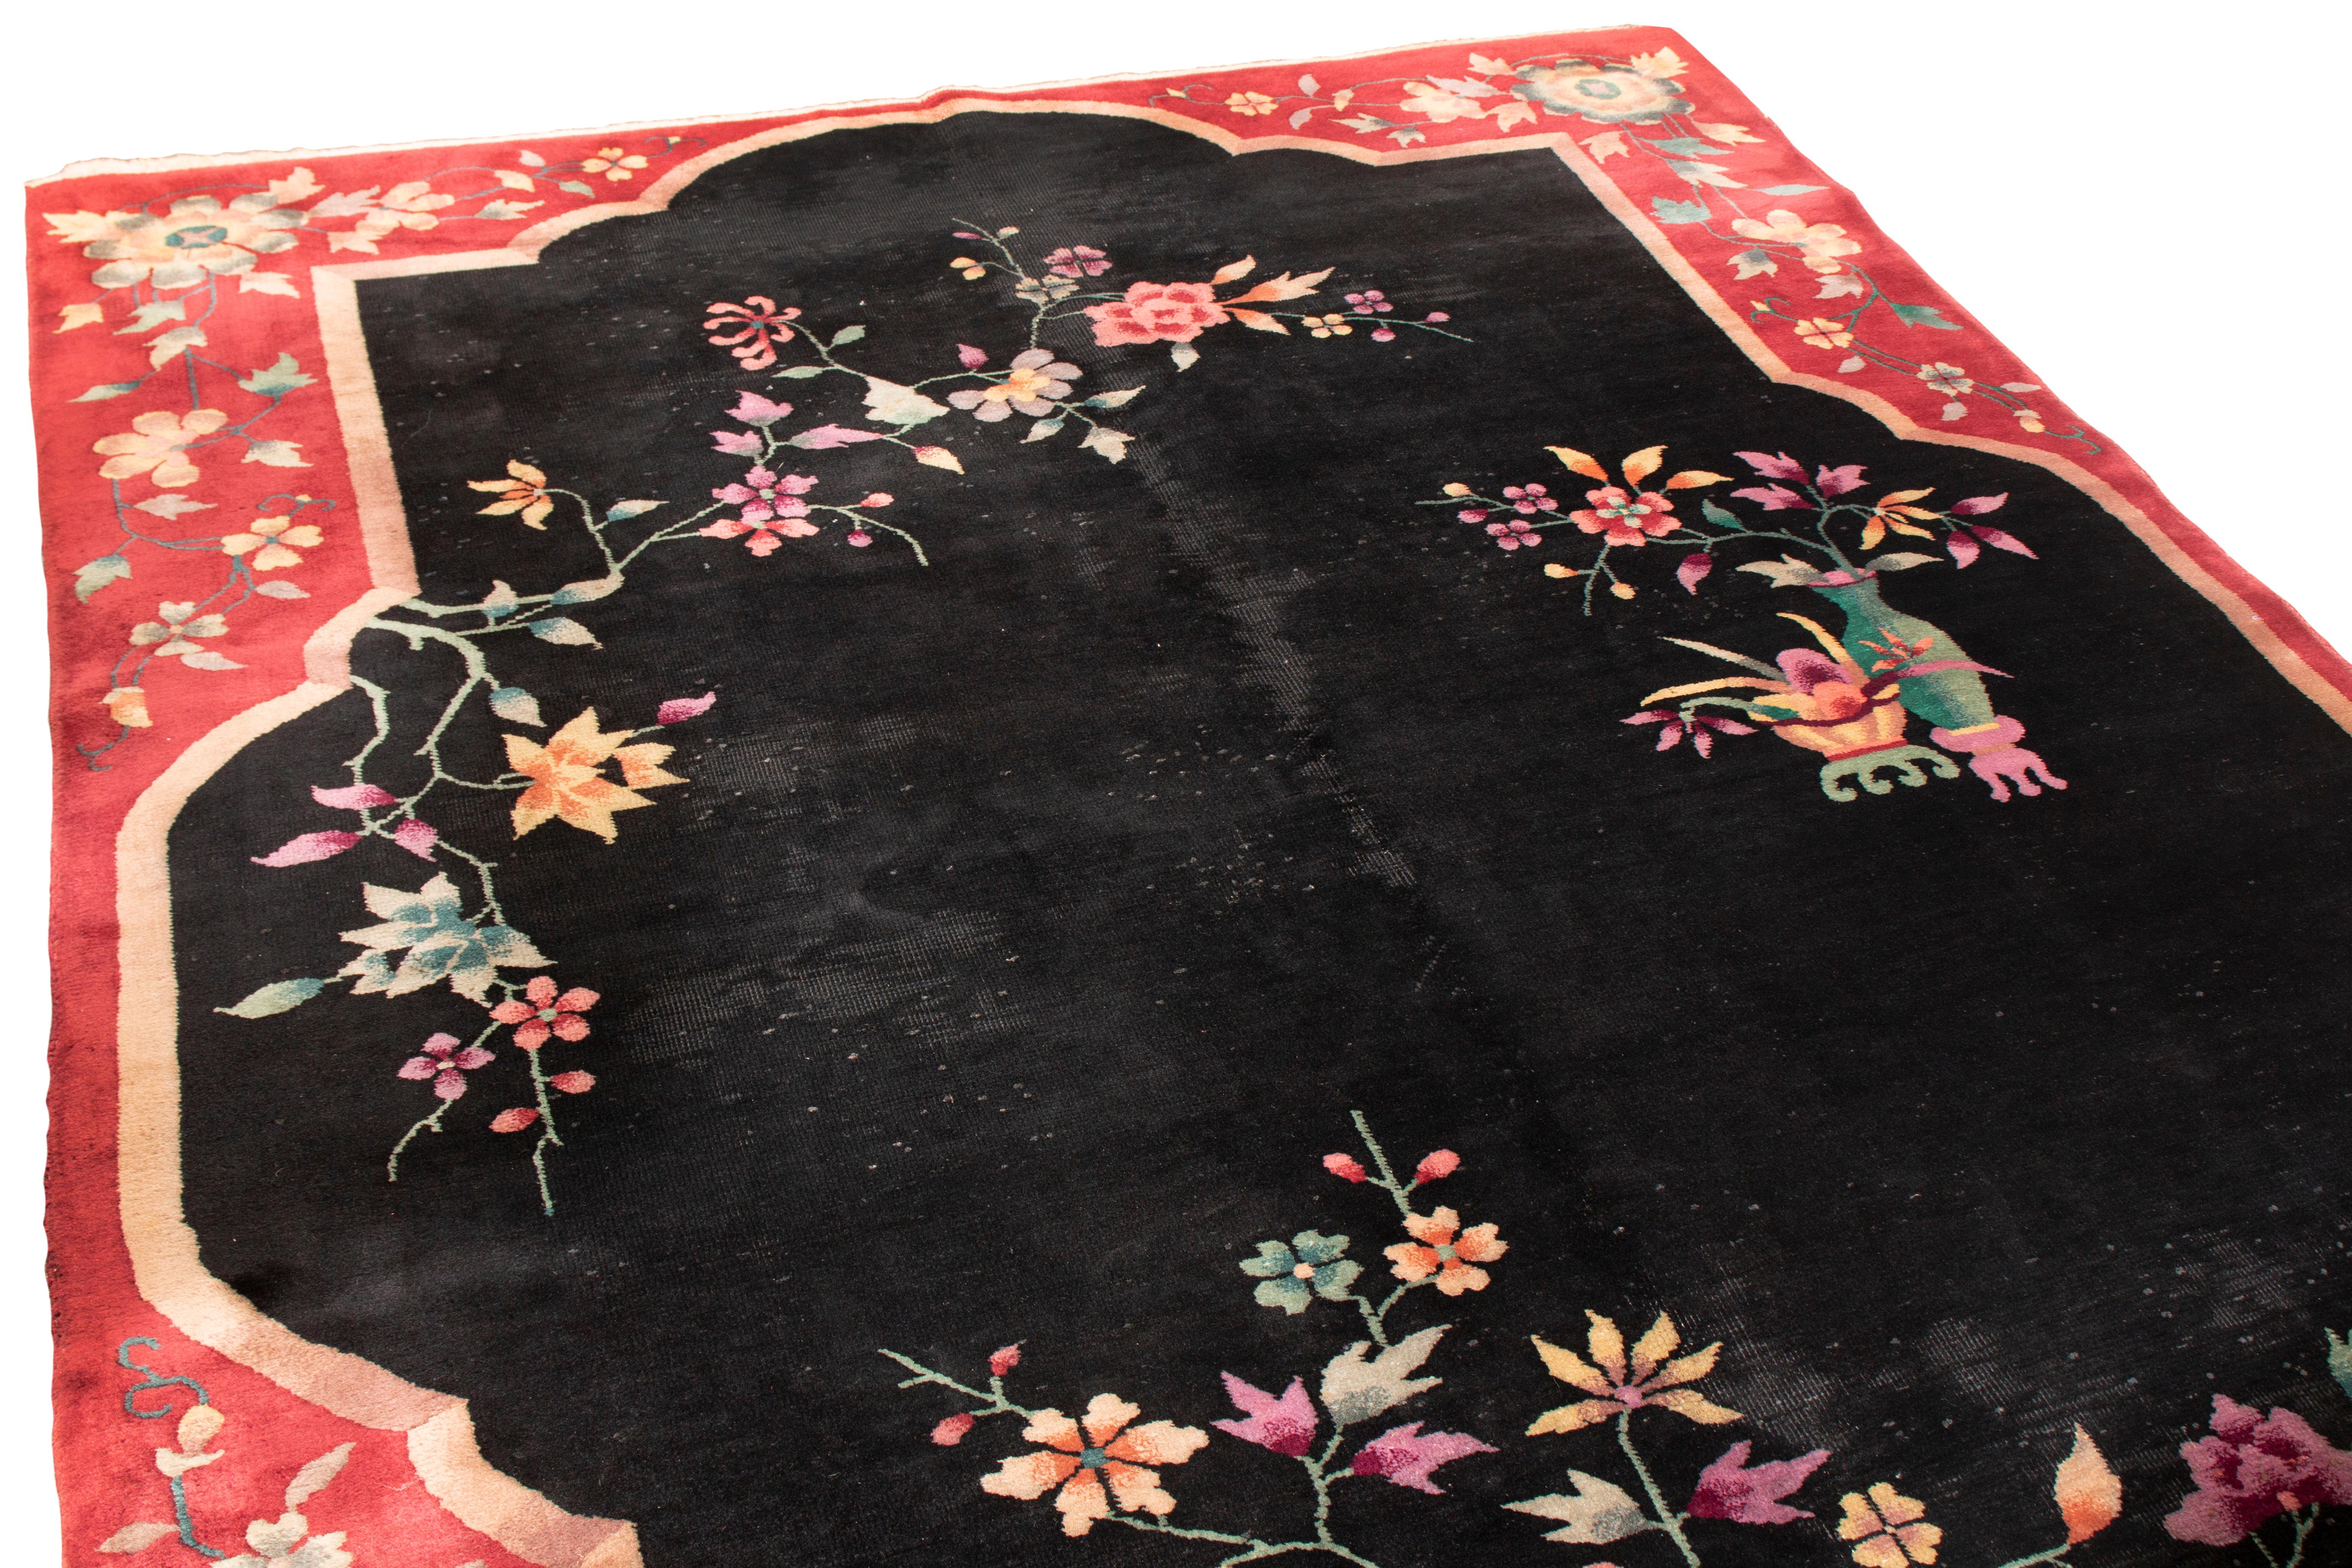 Ce tapis chinois vintage en laine de Rug & Kilim a un style traditionnel avec des influences d'autres familles vintage. Originaires de Chine, les motifs floraux hyper-stylisés, symétriques dans la bordure rouge royal mais presque unilatéraux dans le